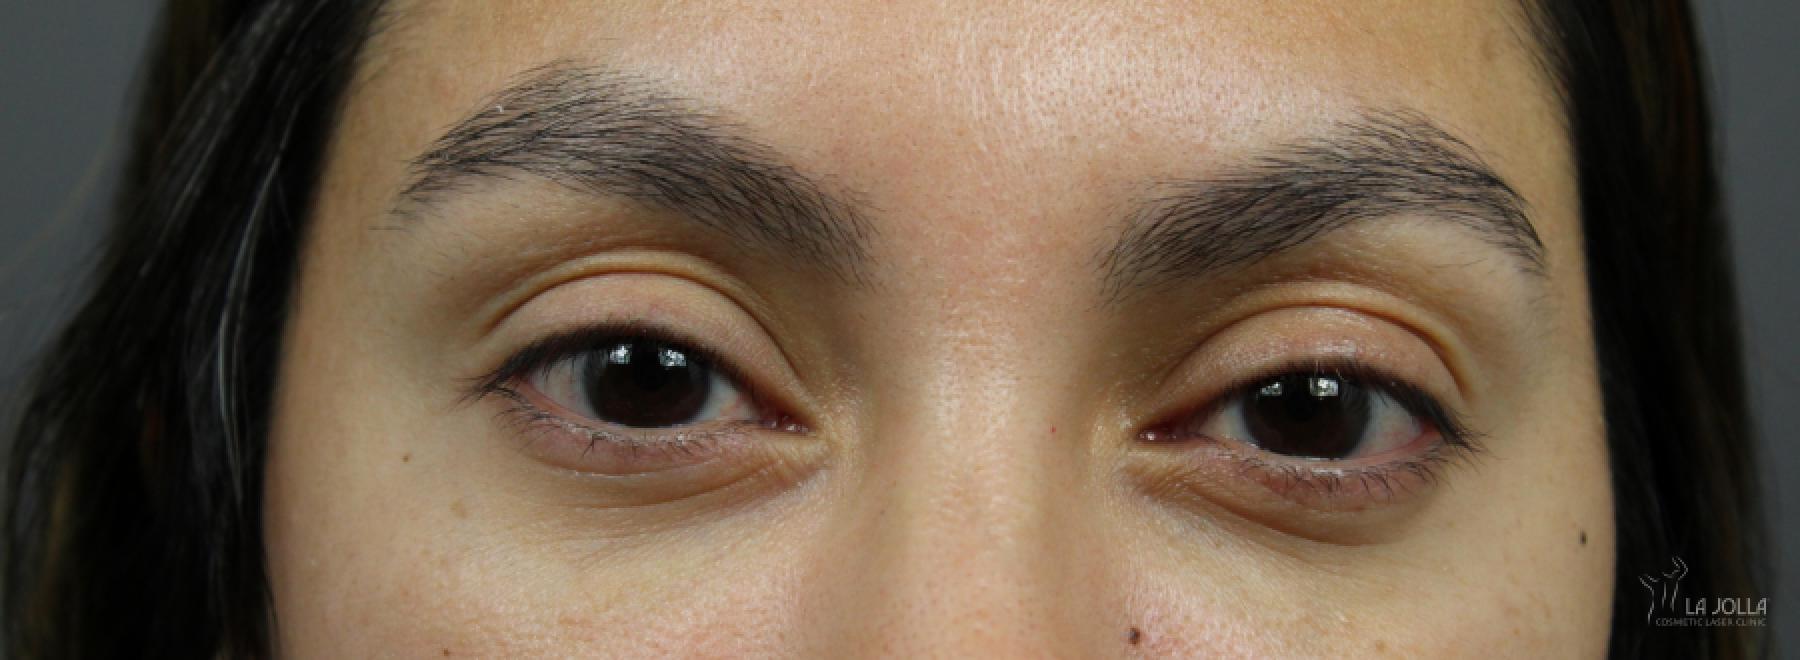 Under Eye Filler: Patient 6 - After  